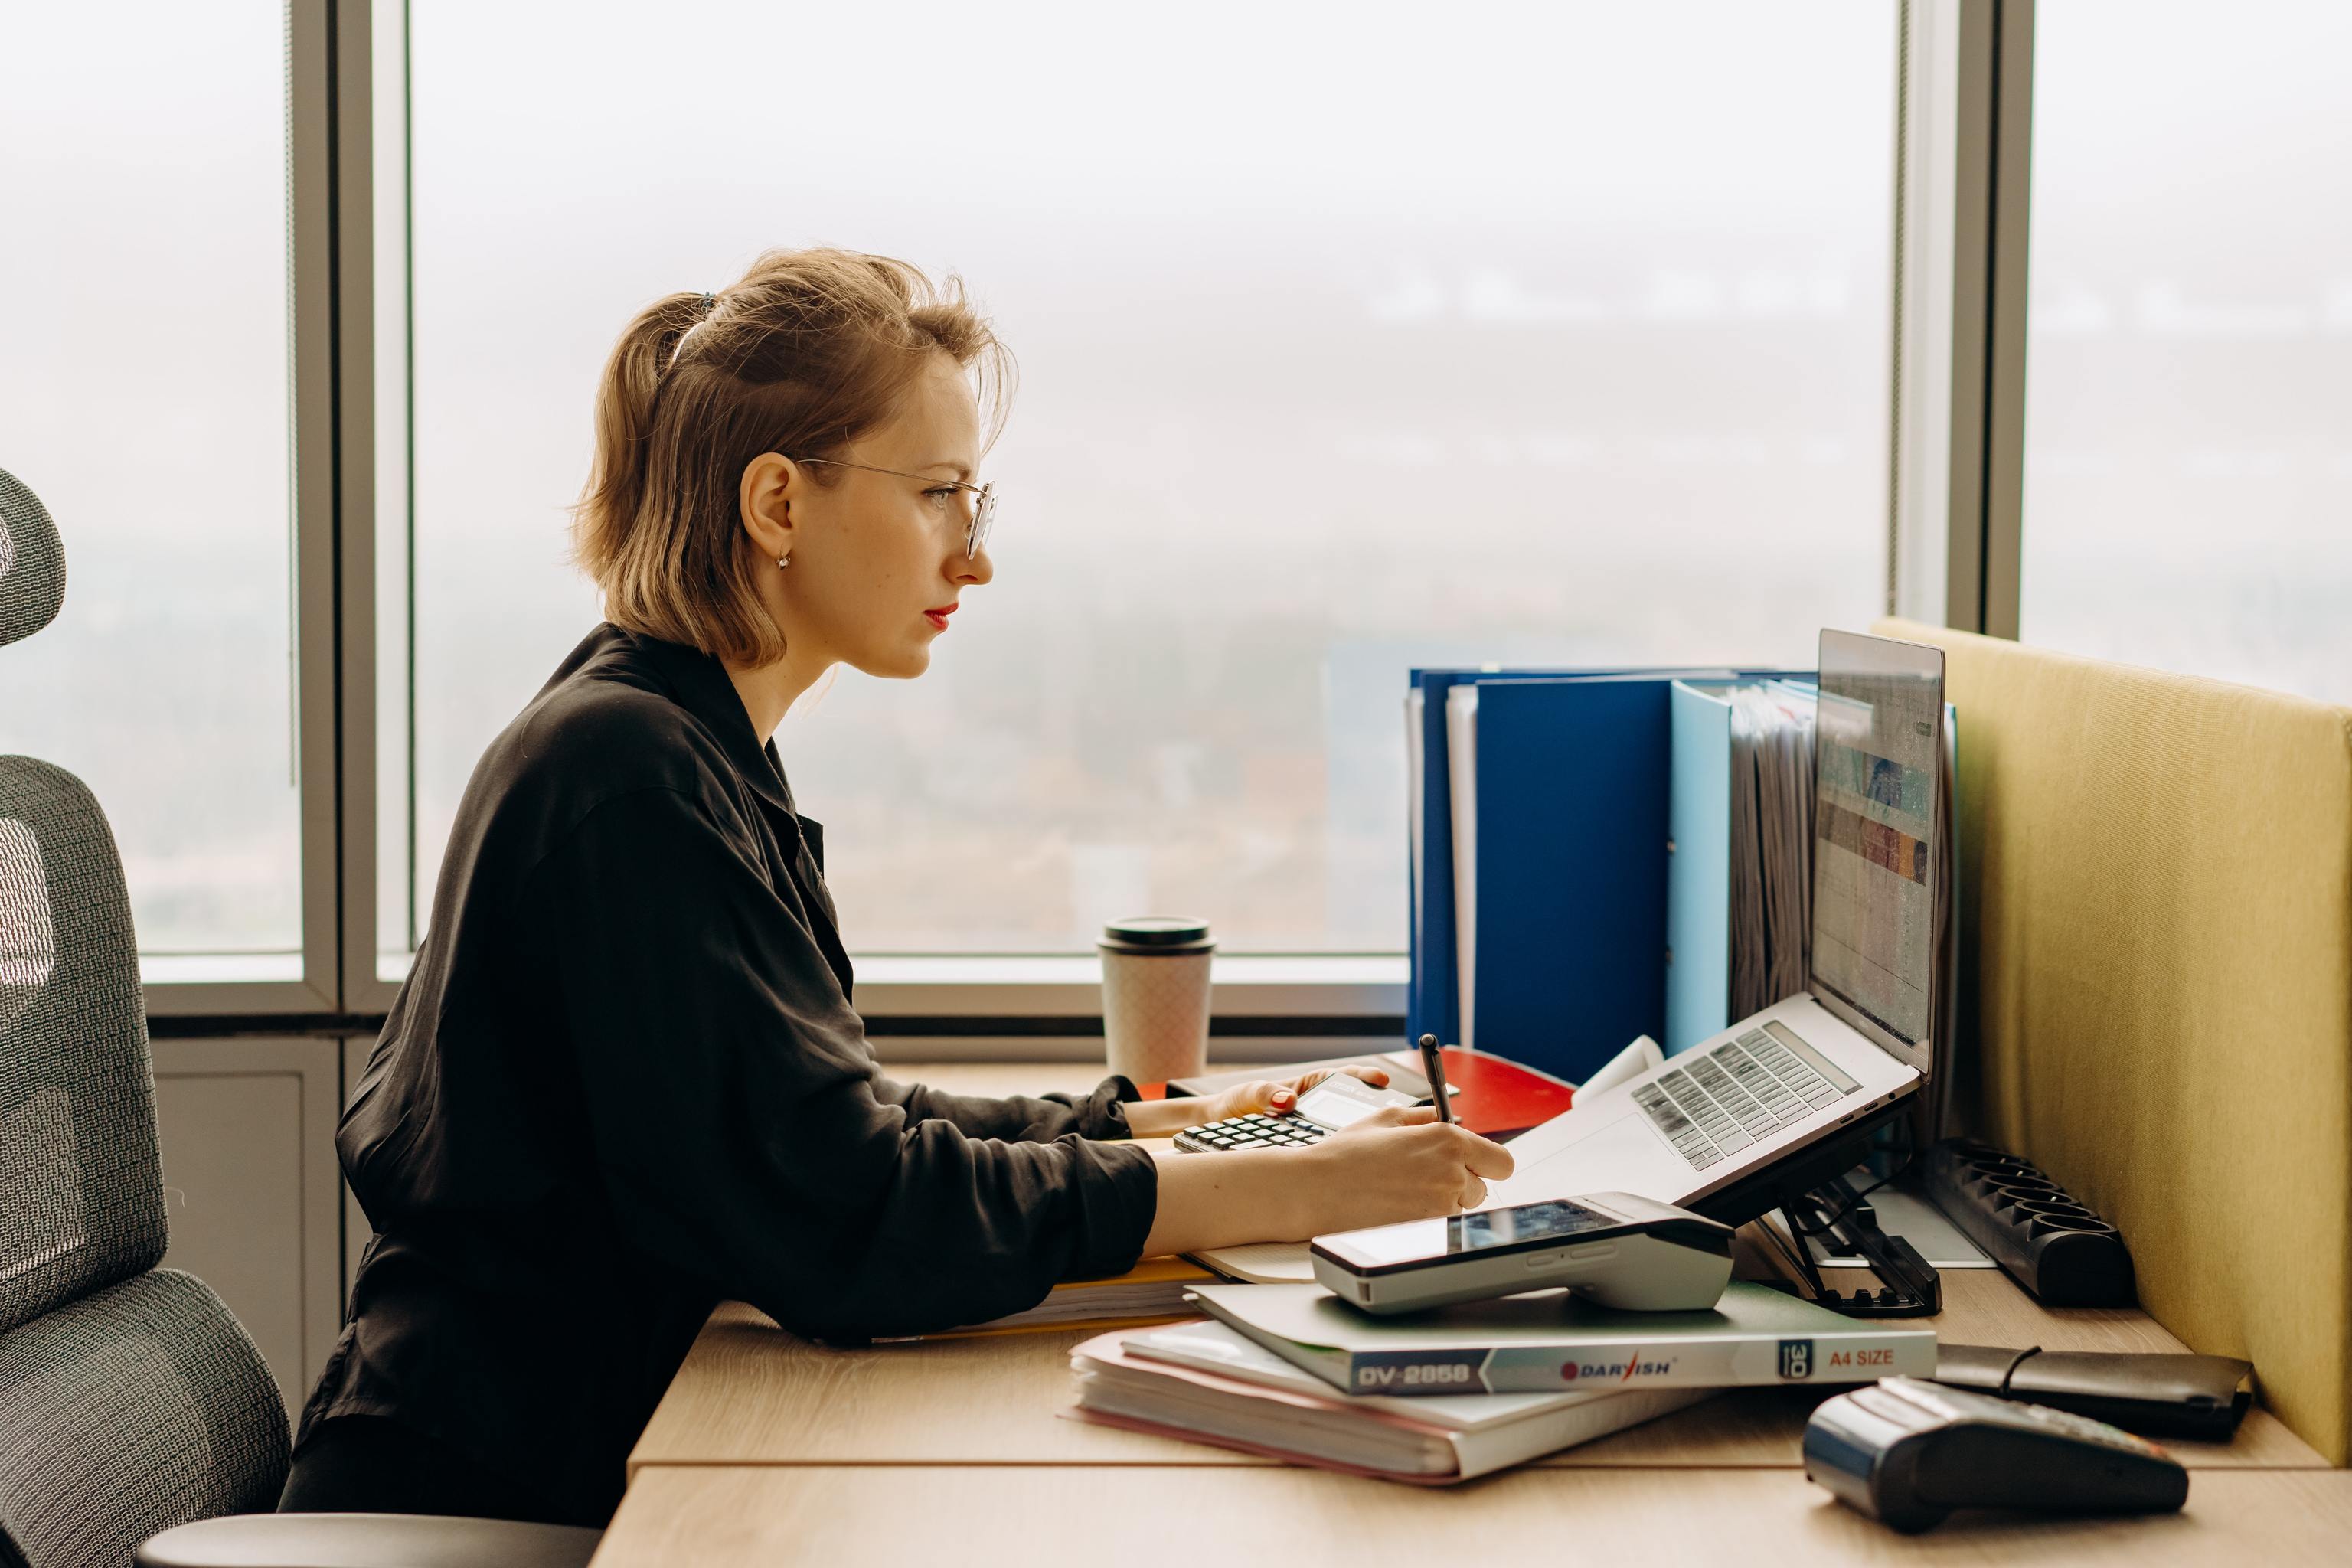 Una mujer trabaja con un ordenador, tomando apuntes y con una calculadora sobre la mesa.